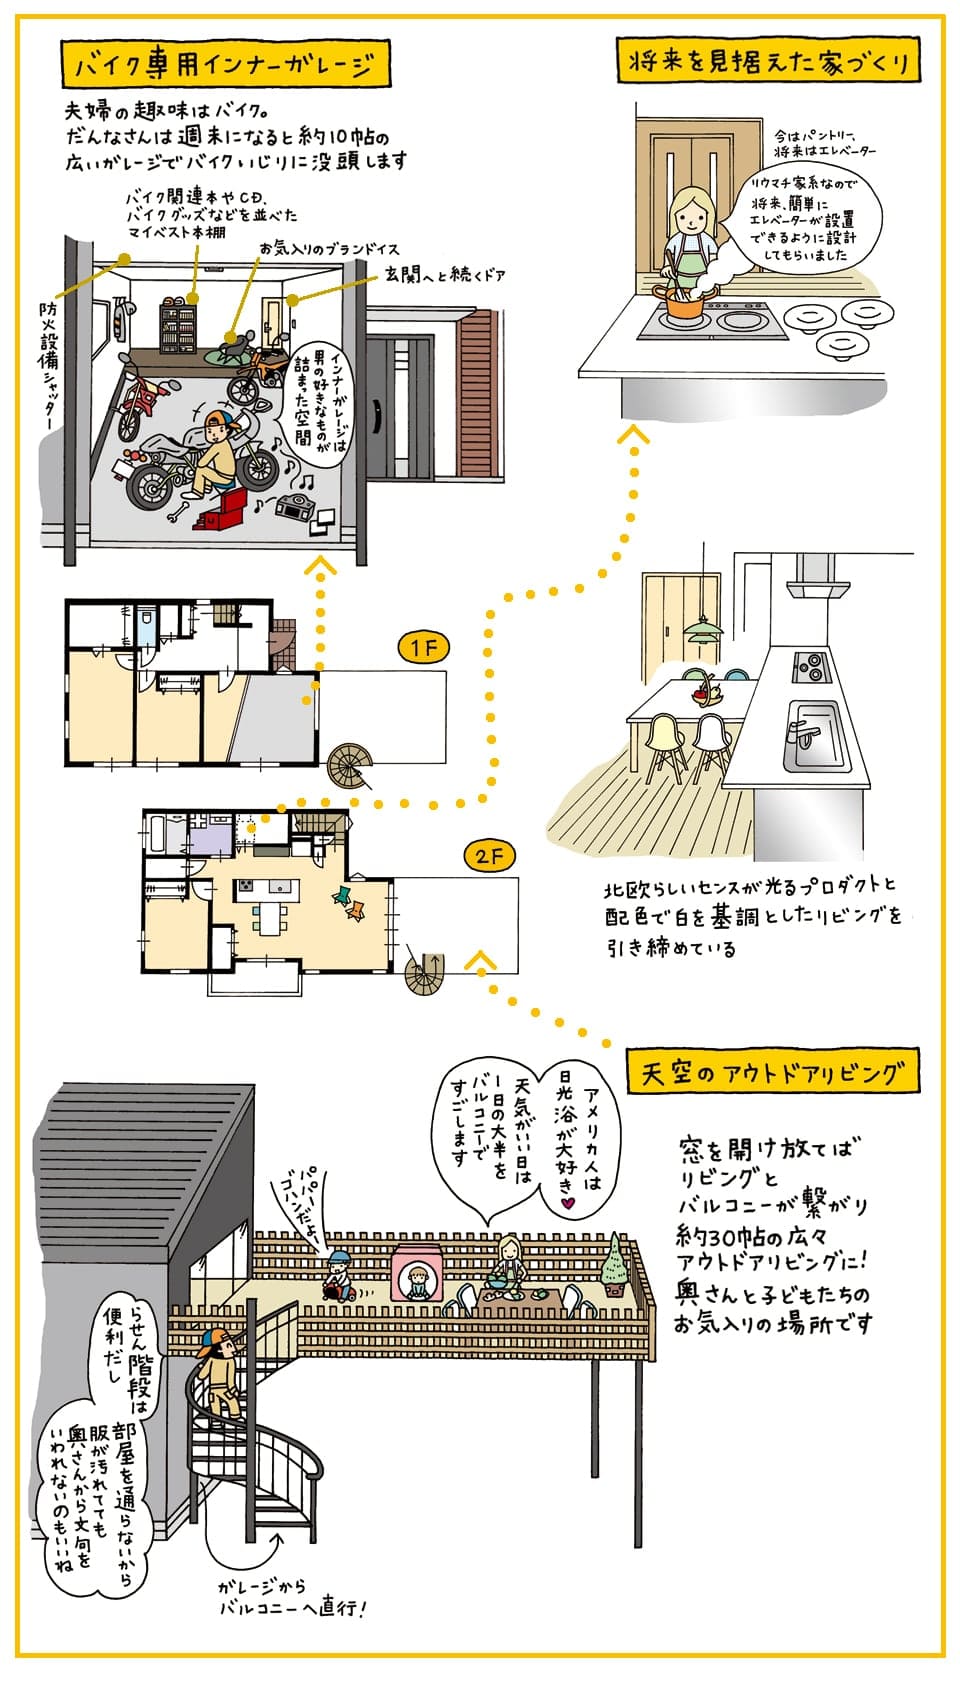 バイク専用のインナーガレージとひろびろ12帖のアウトドアリビングのある家がほしい 神奈川 横浜 相模原エリアの注文住宅ならビルドアート